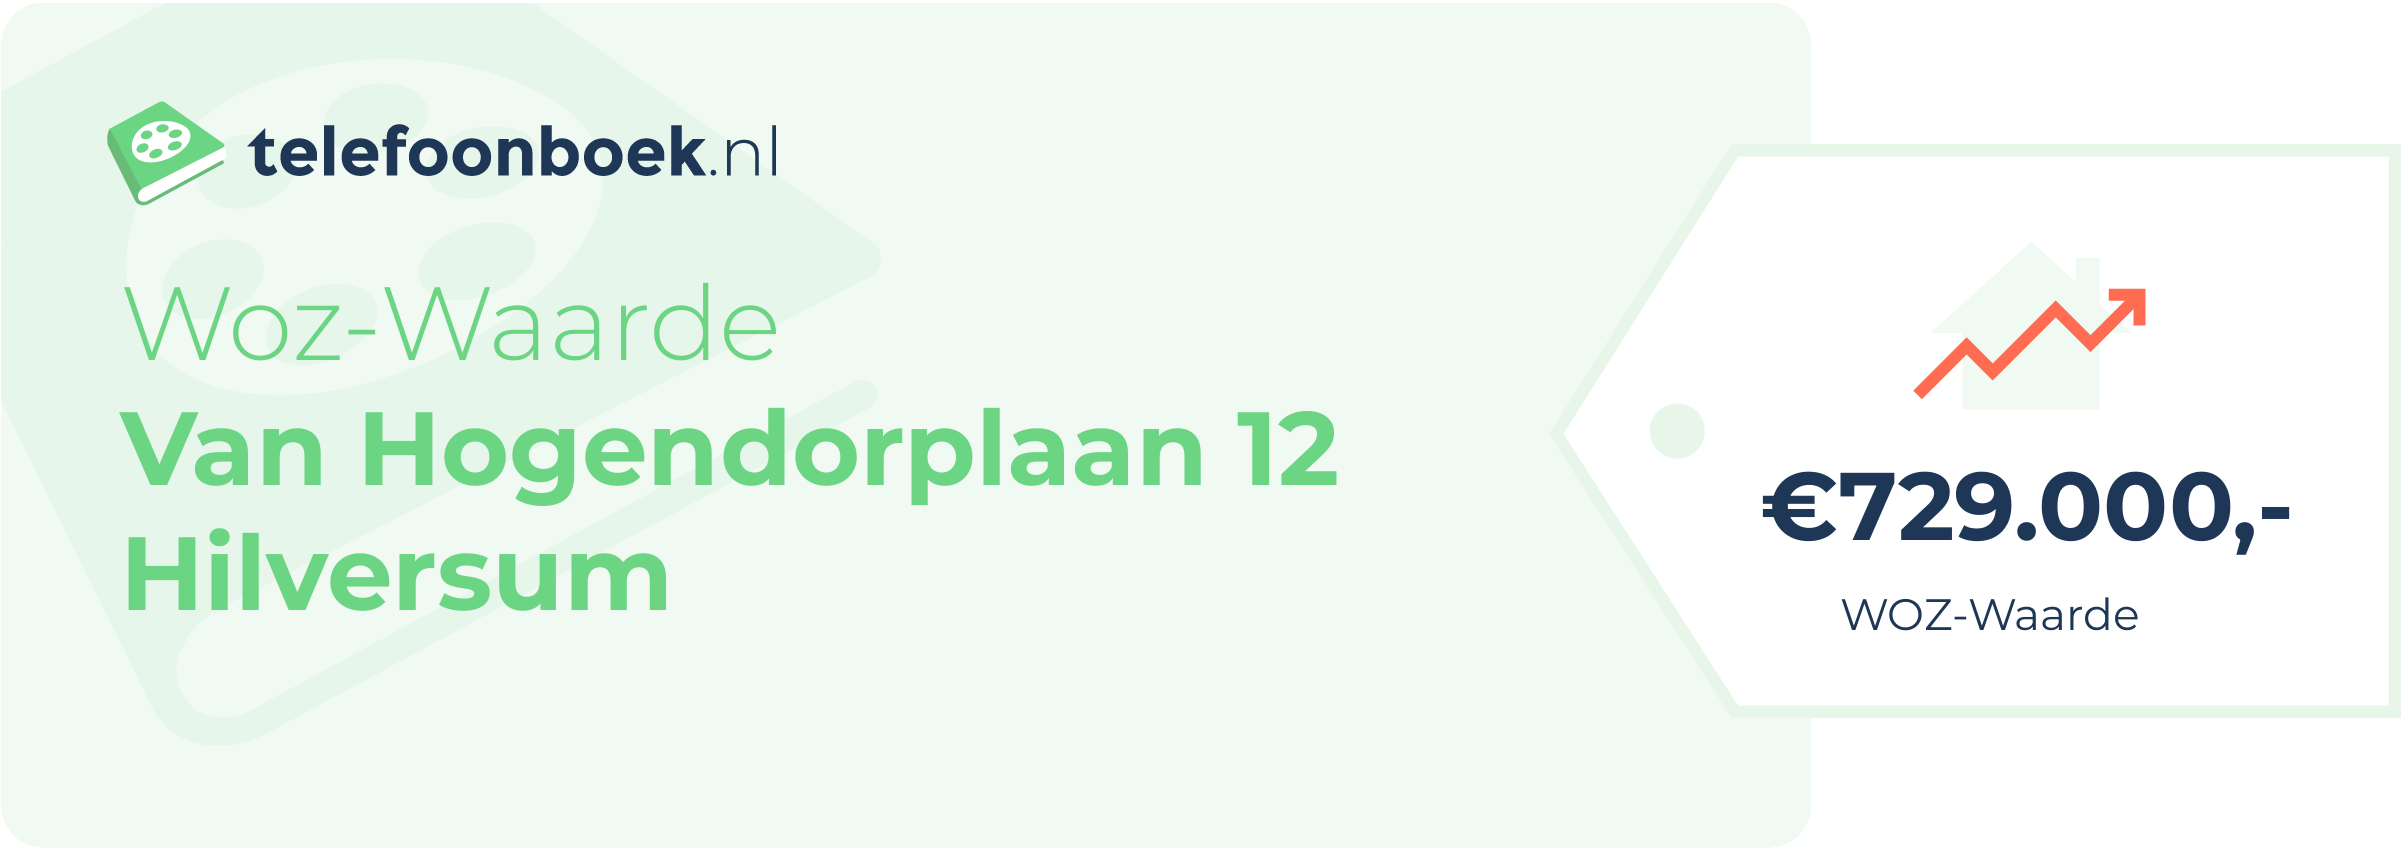 WOZ-waarde Van Hogendorplaan 12 Hilversum